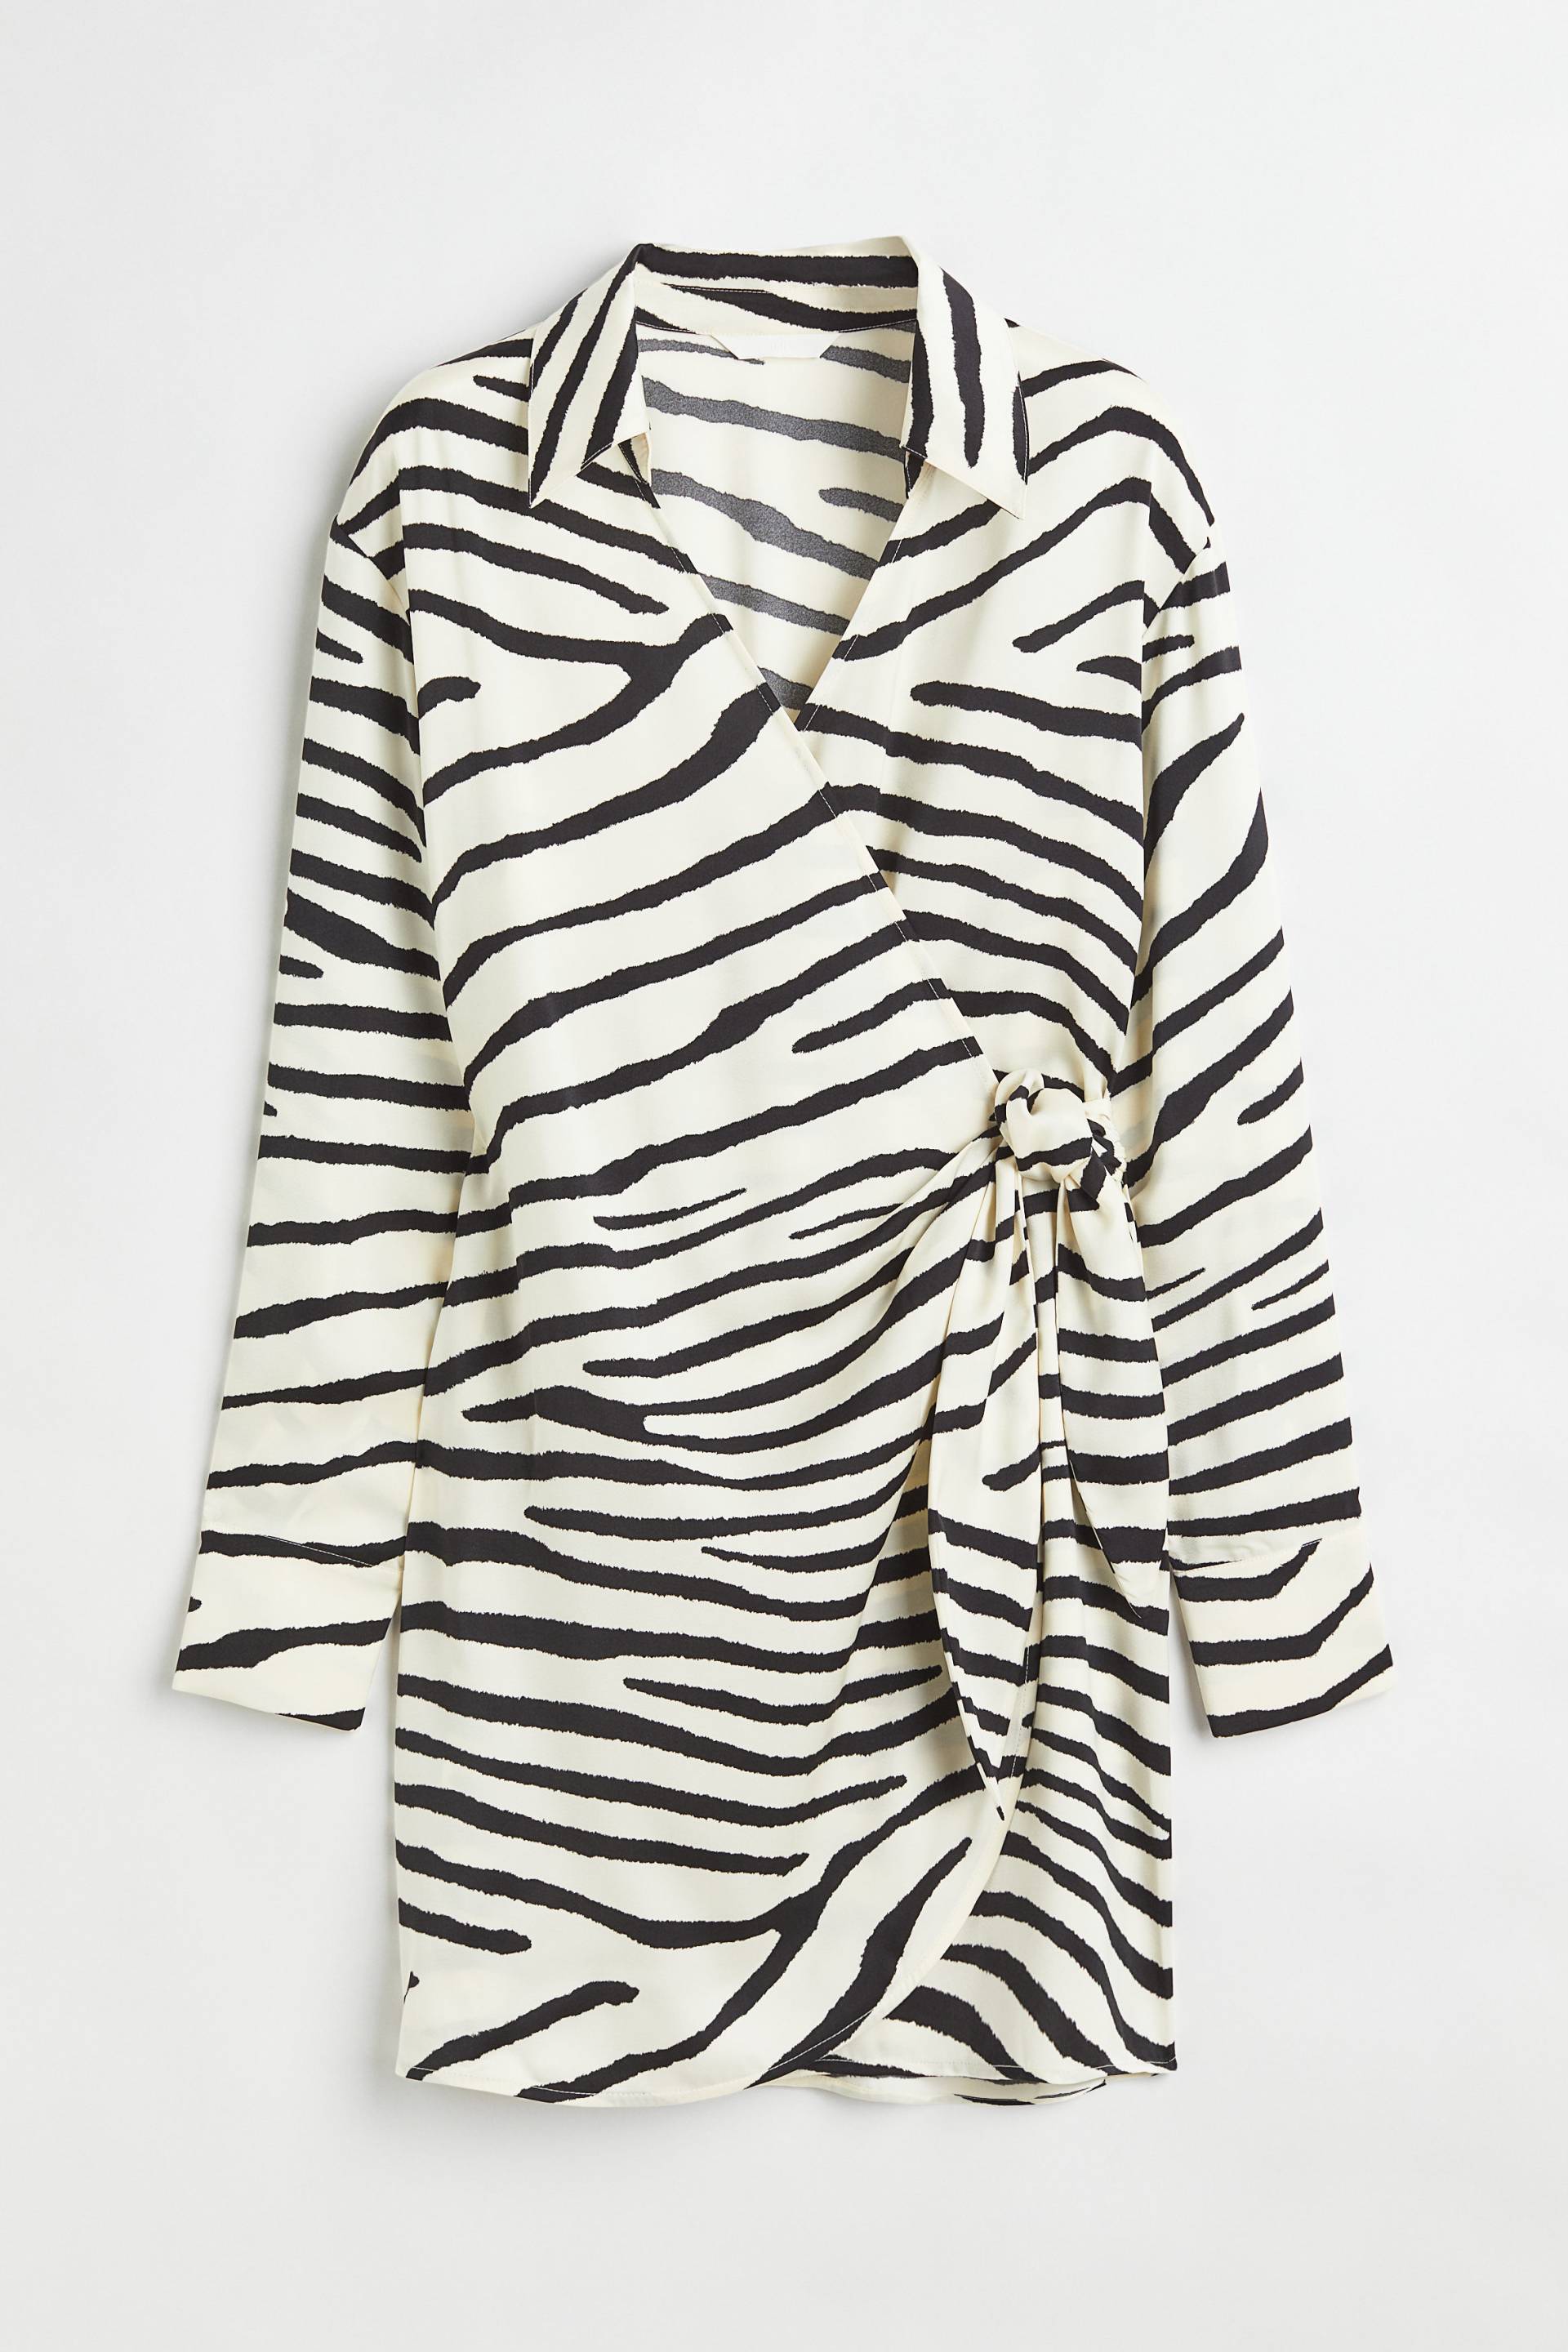 H&M Blusenkleid aus Satin im Wickelschnitt Cremefarben/Zebramuster, Alltagskleider in Größe XXL. Farbe: Cream/zebra print von H&M